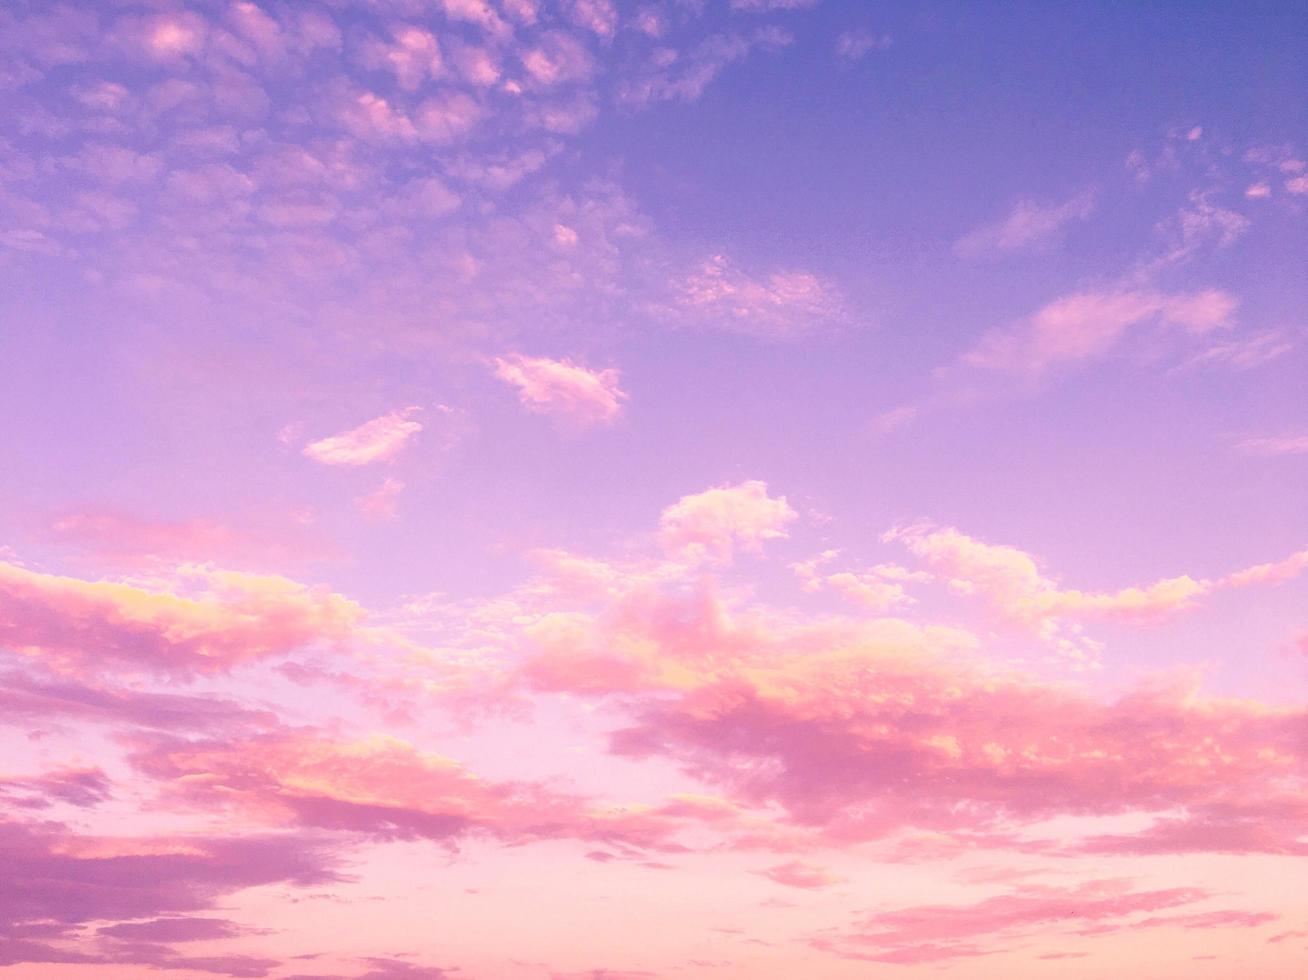 nuvens cor de rosa e céu azul roxo foto